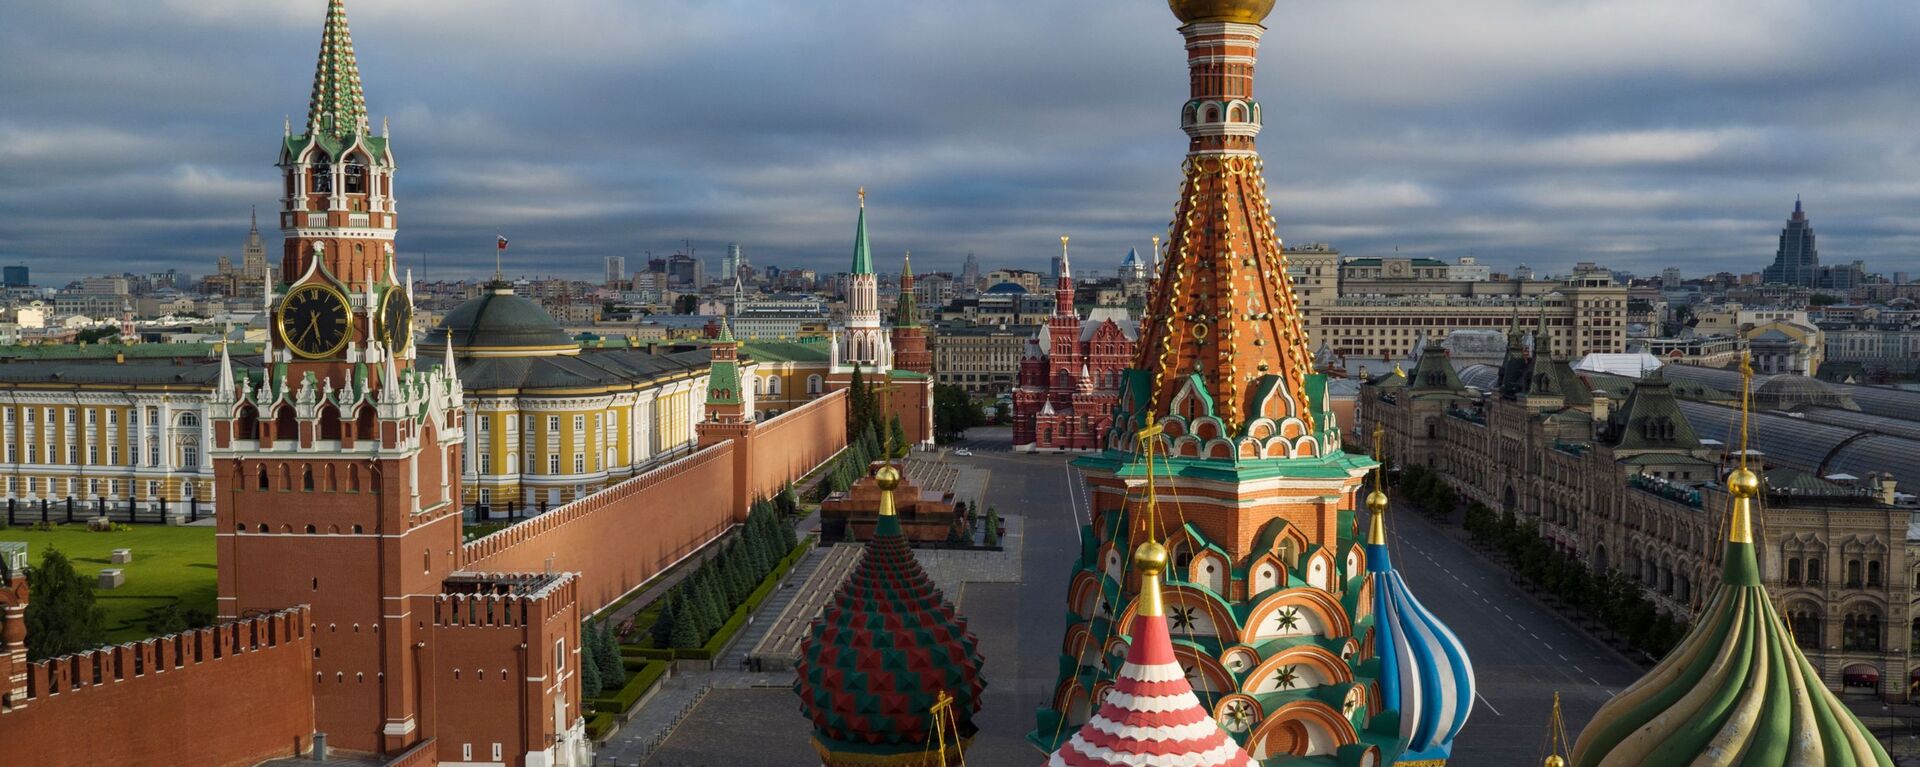 Mái vòm của Nhà thờ Thánh Basil được ban phước trên Quảng trường Đỏ ở Moskva - Sputnik Việt Nam, 1920, 14.06.2022